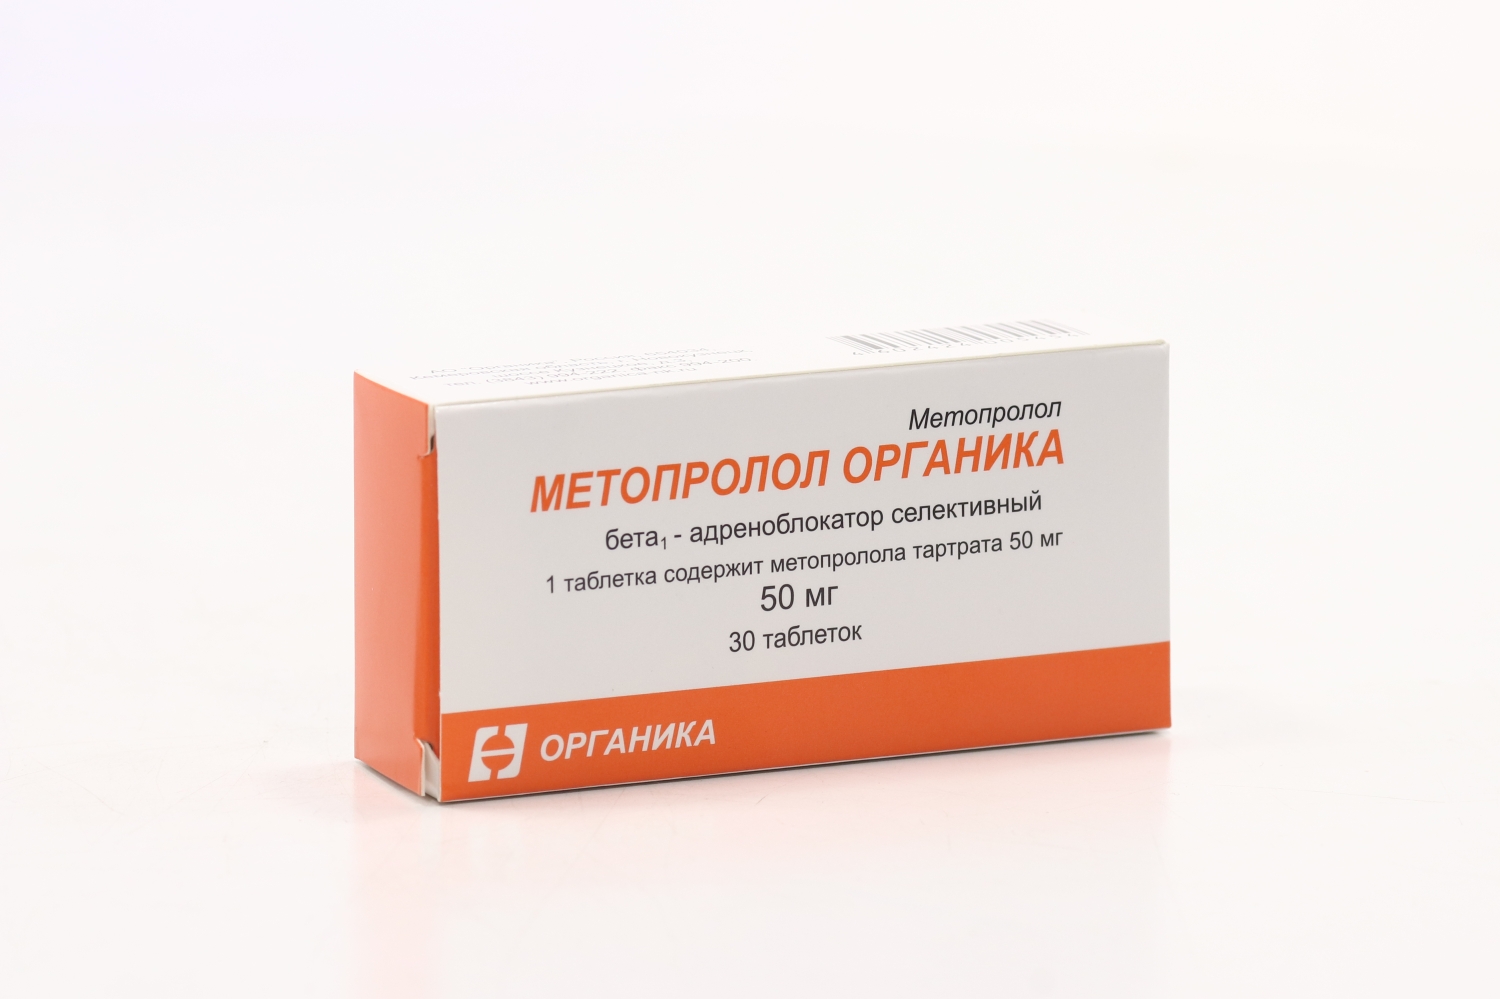 Метопролол группа препарата. Метопролол 50 мг. Метопрололом органика. Метопролол органика таблетки. Метопролол форма выпуска.